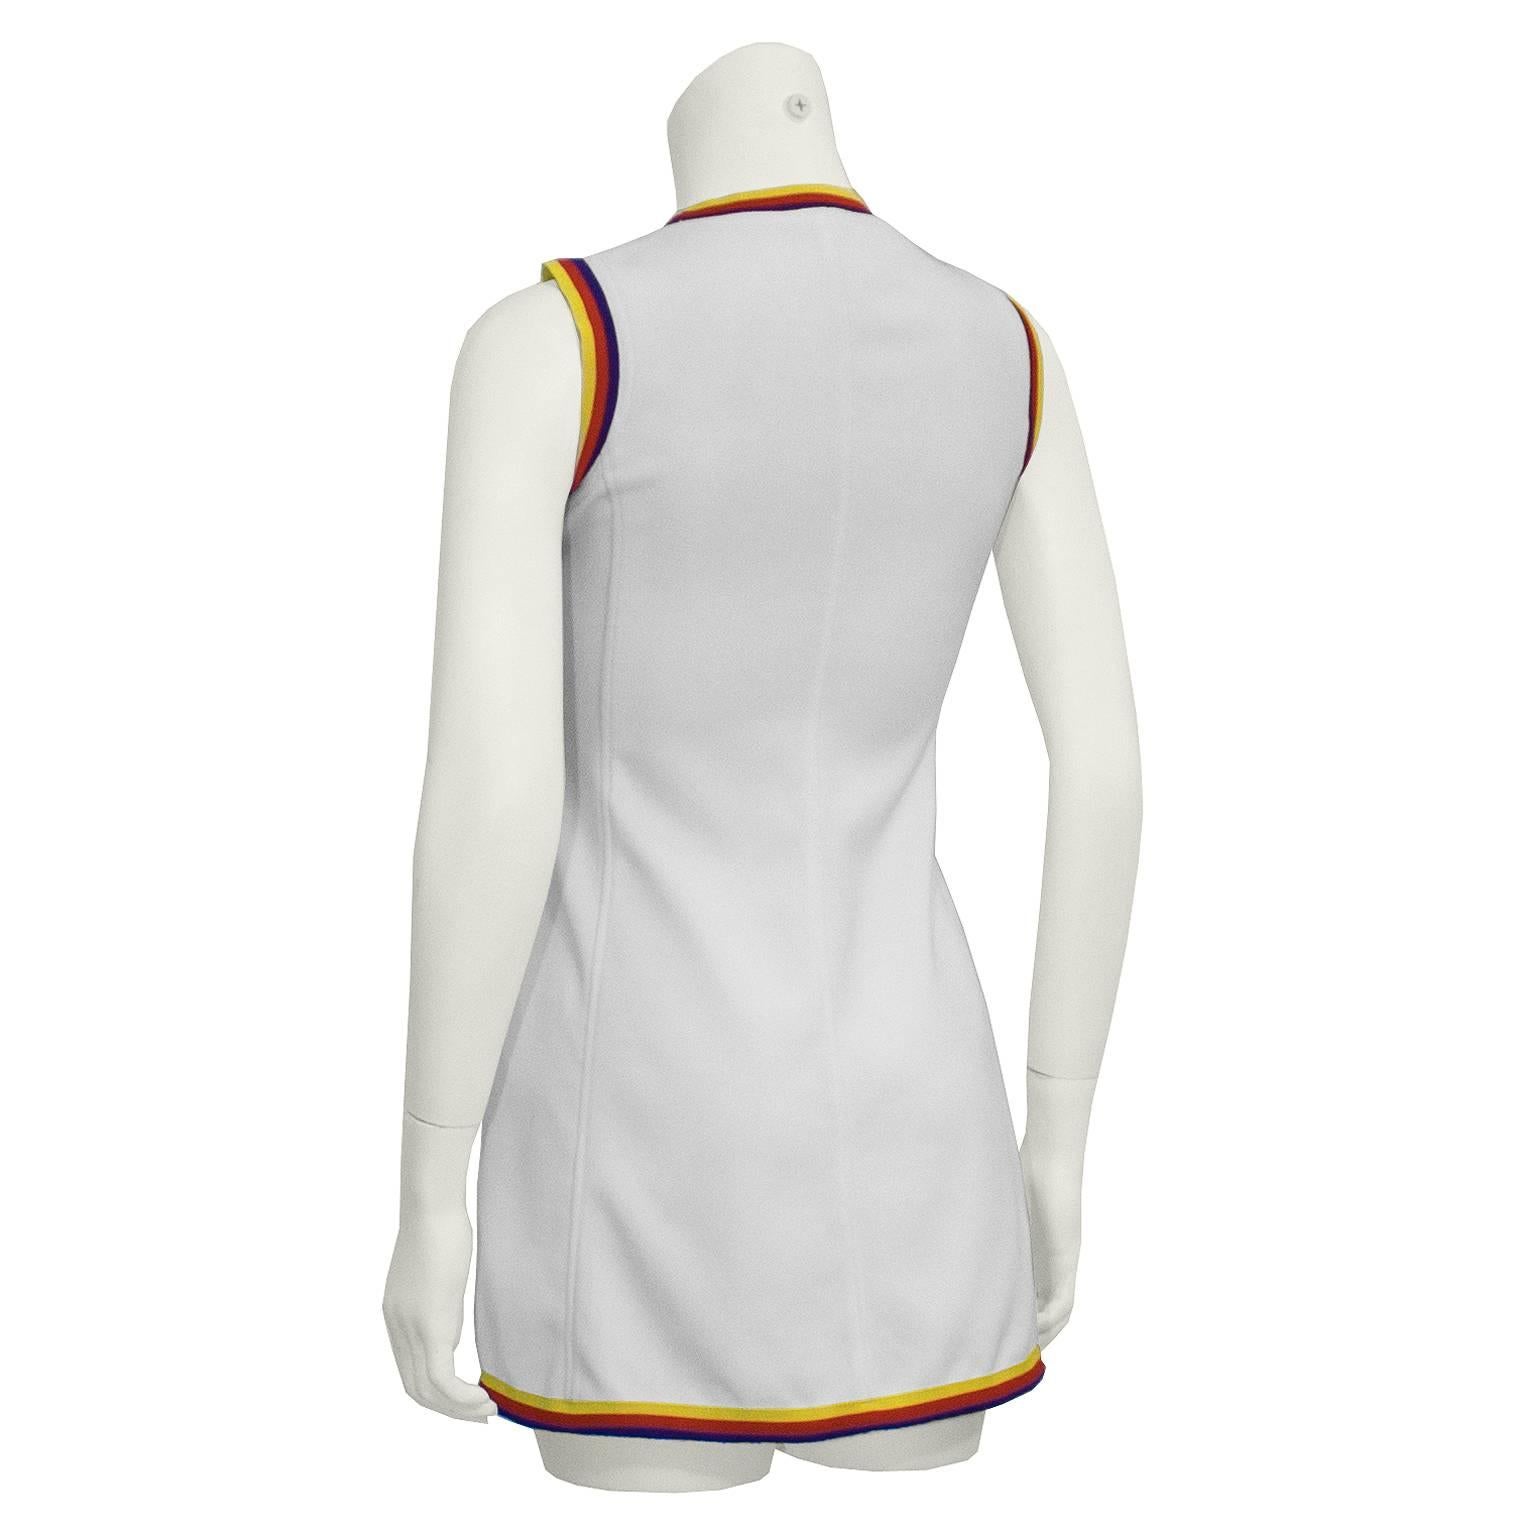 1960s tennis dress